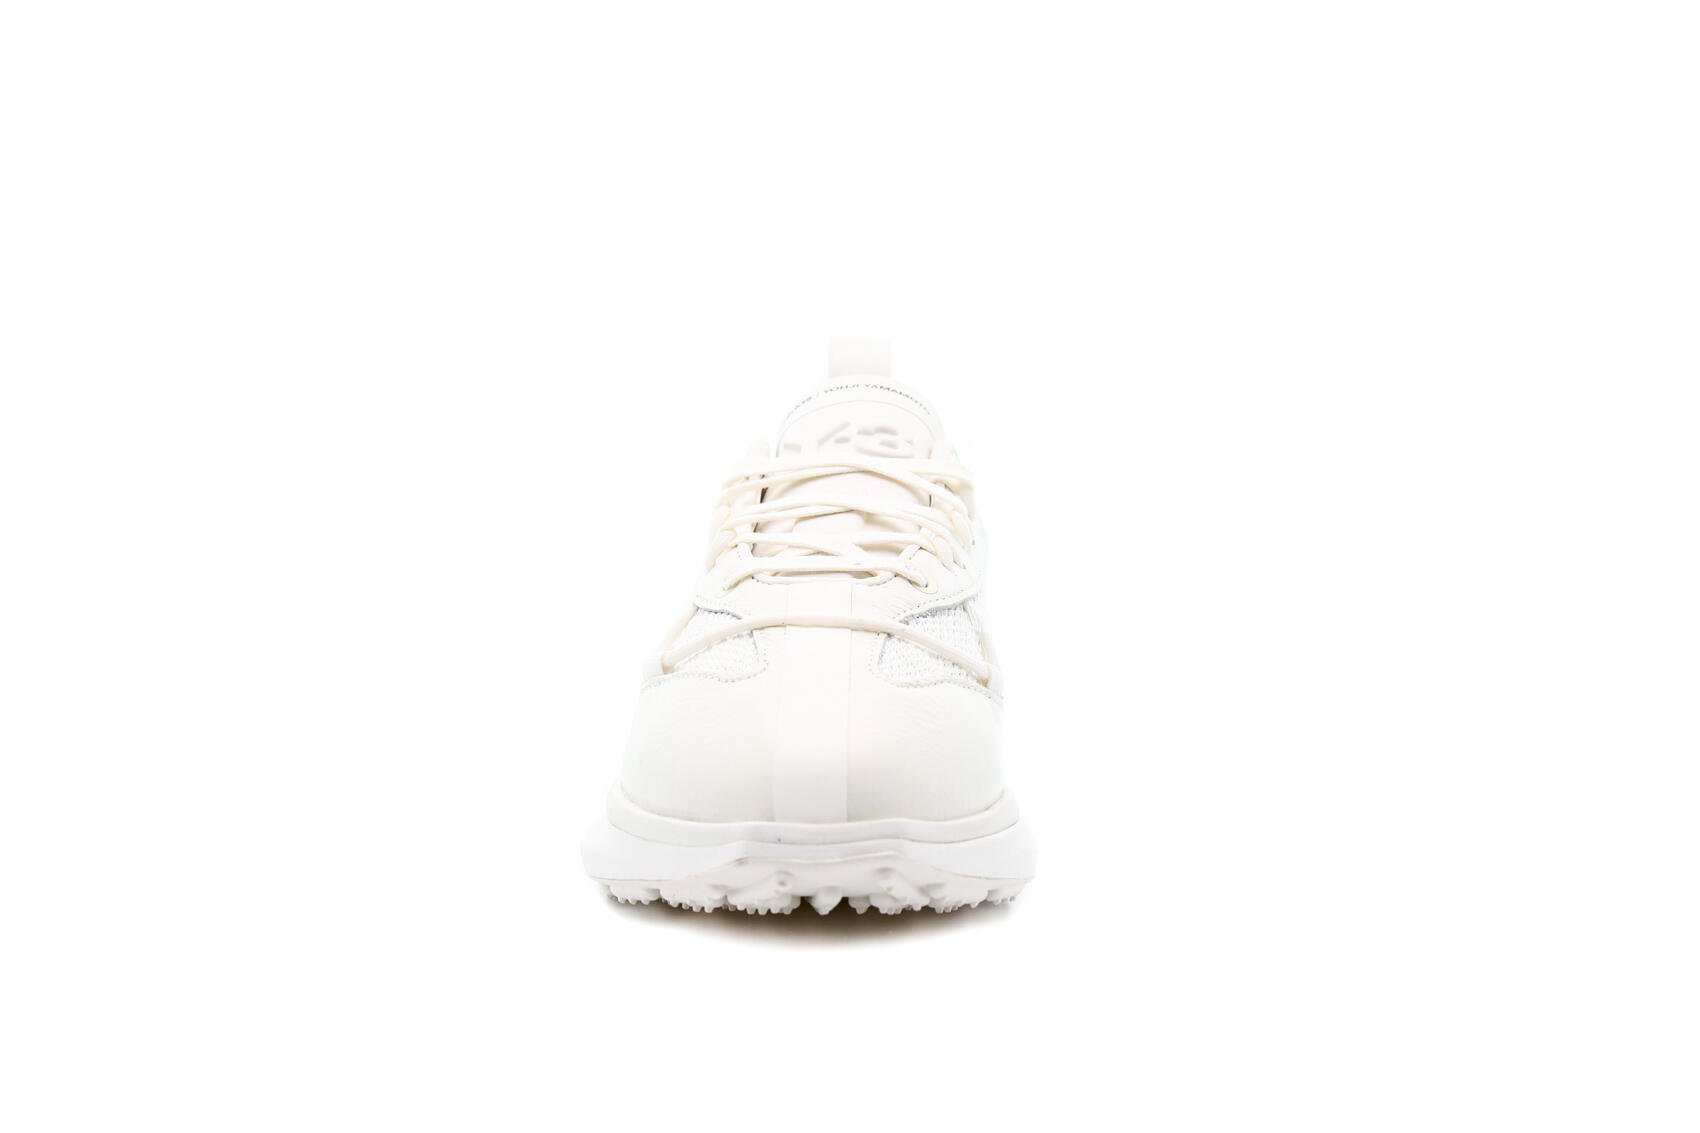 adidas Originals Y-3 SHIKU RUN "WHITE"